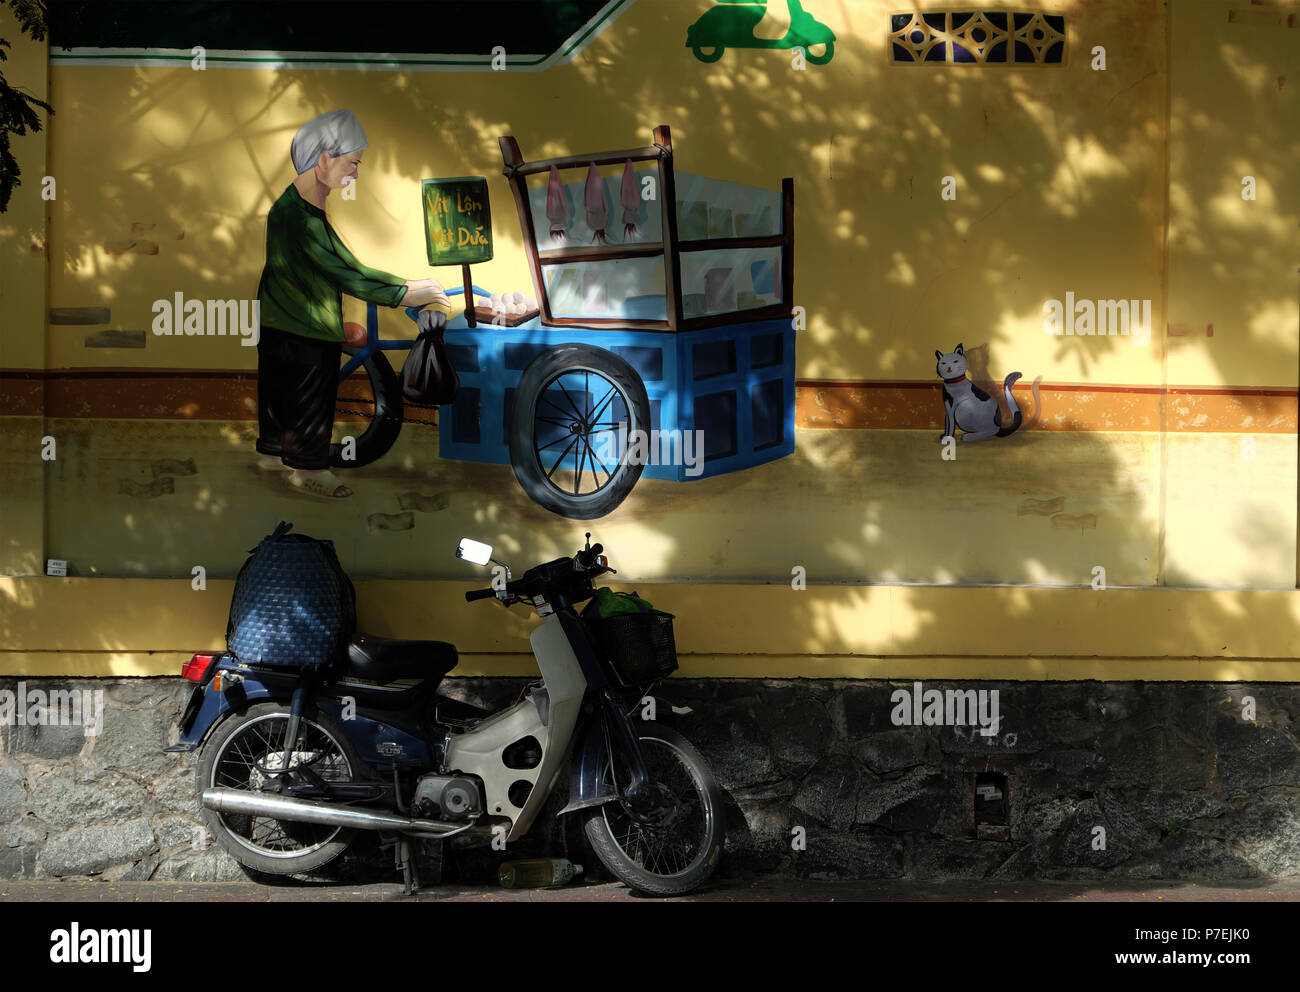 Ho Chi Minh City, Vietnam - 29. Mai 2018: Gemälde an der Wand über Cat, Frau und Push Warenkorb zeigen Lifestyle im Saigon, ein Motorrad auf Bürgersteig, Graffiti Stockfoto